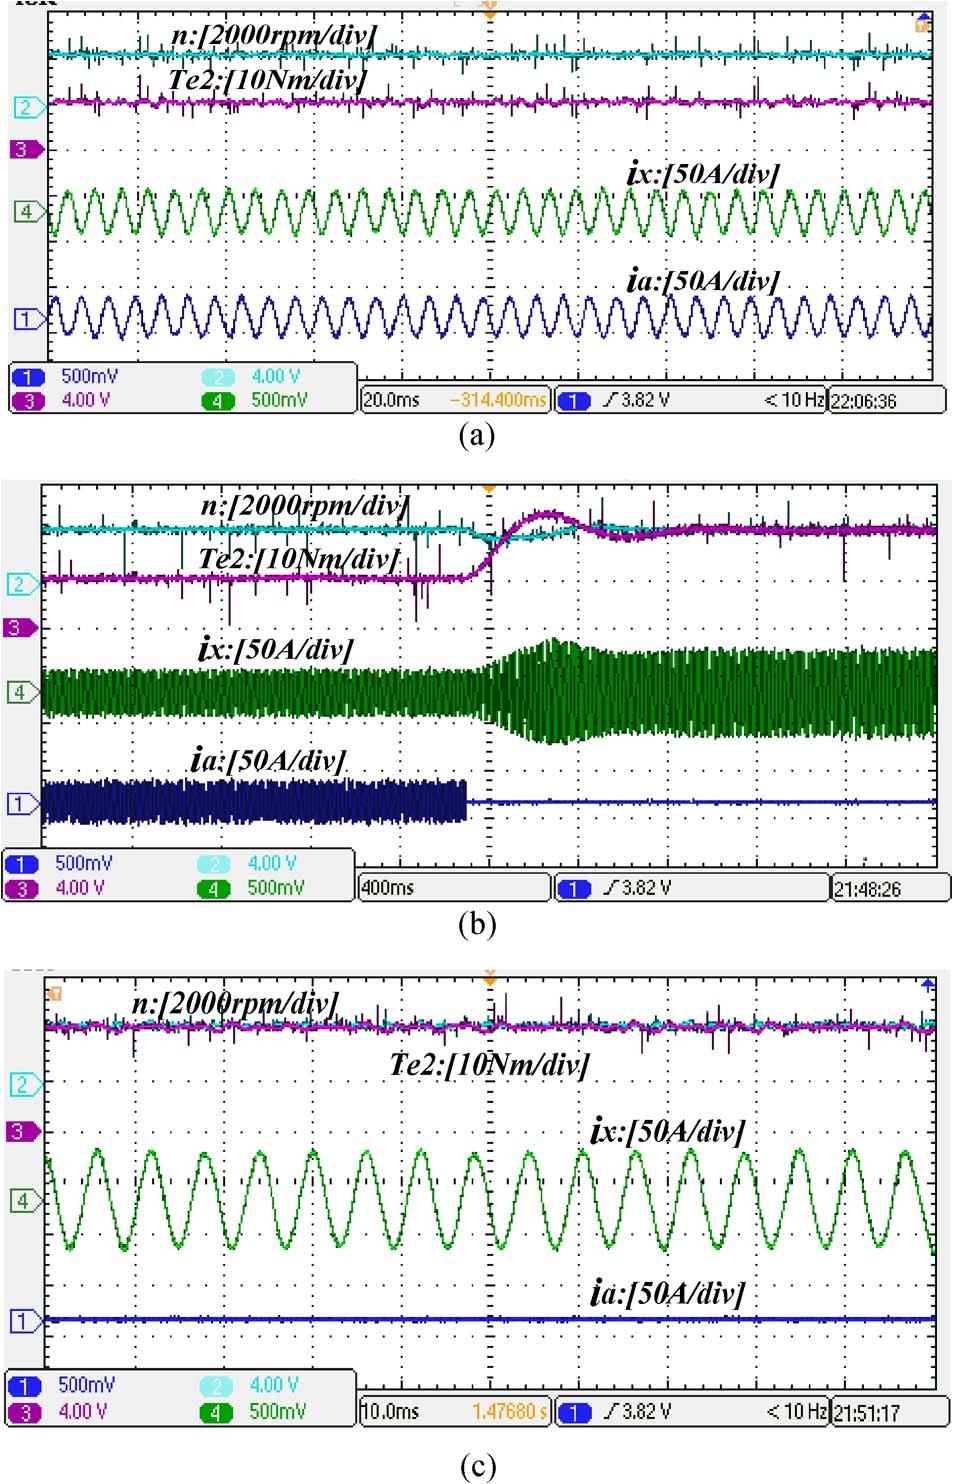 (c) Torque waveforms of xyz windings. (d) Torque waveforms of the DFPM motor. (e) Speed waveforms of the DFPM motor.